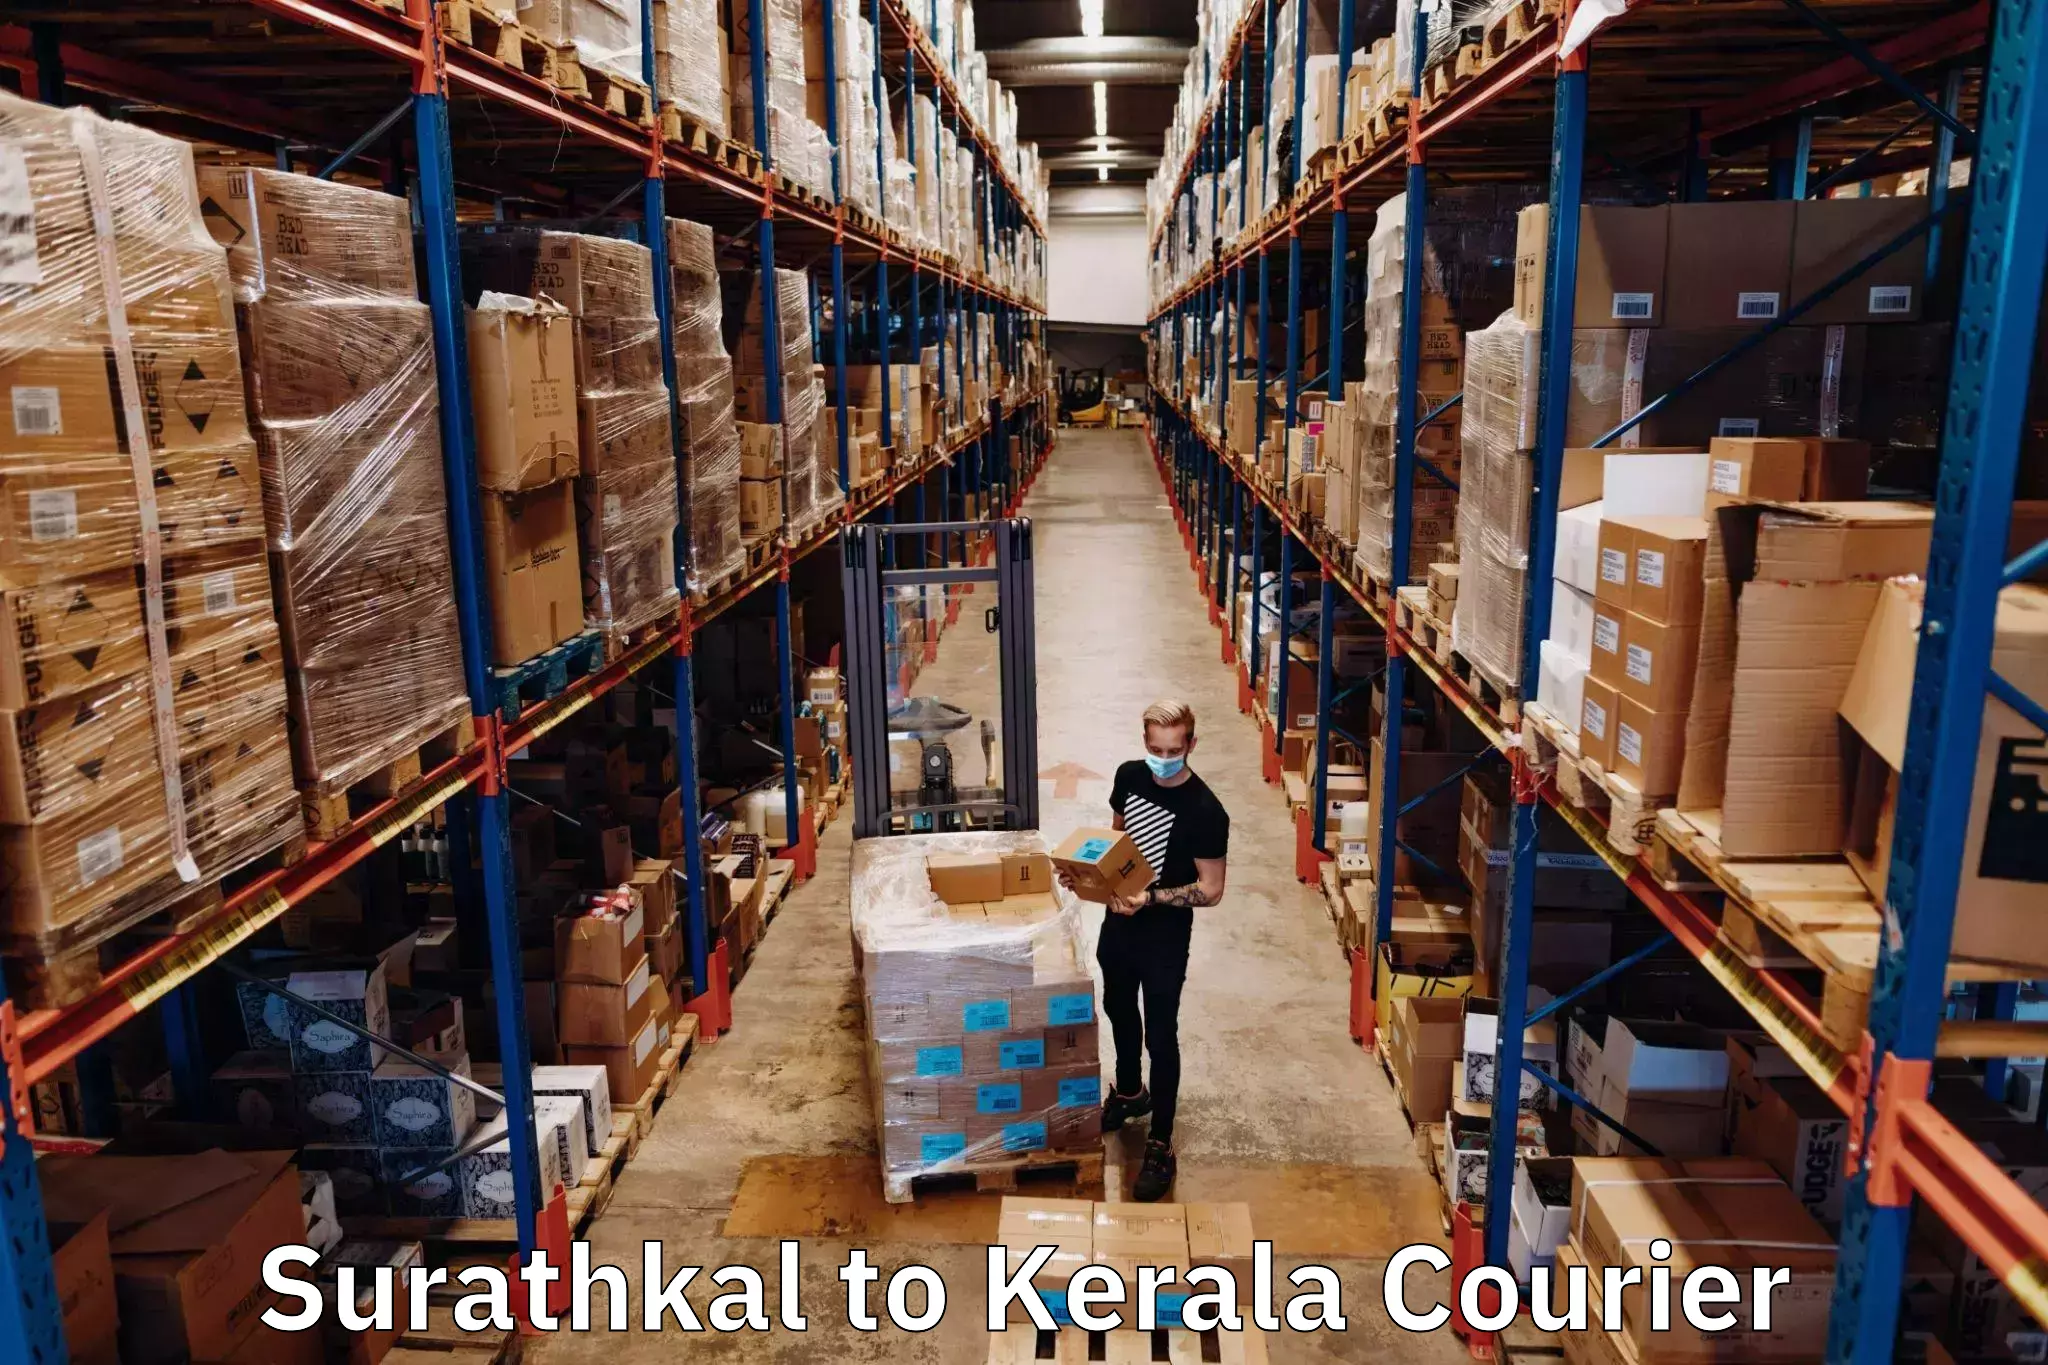 Rural area delivery Surathkal to Cochin Port Kochi